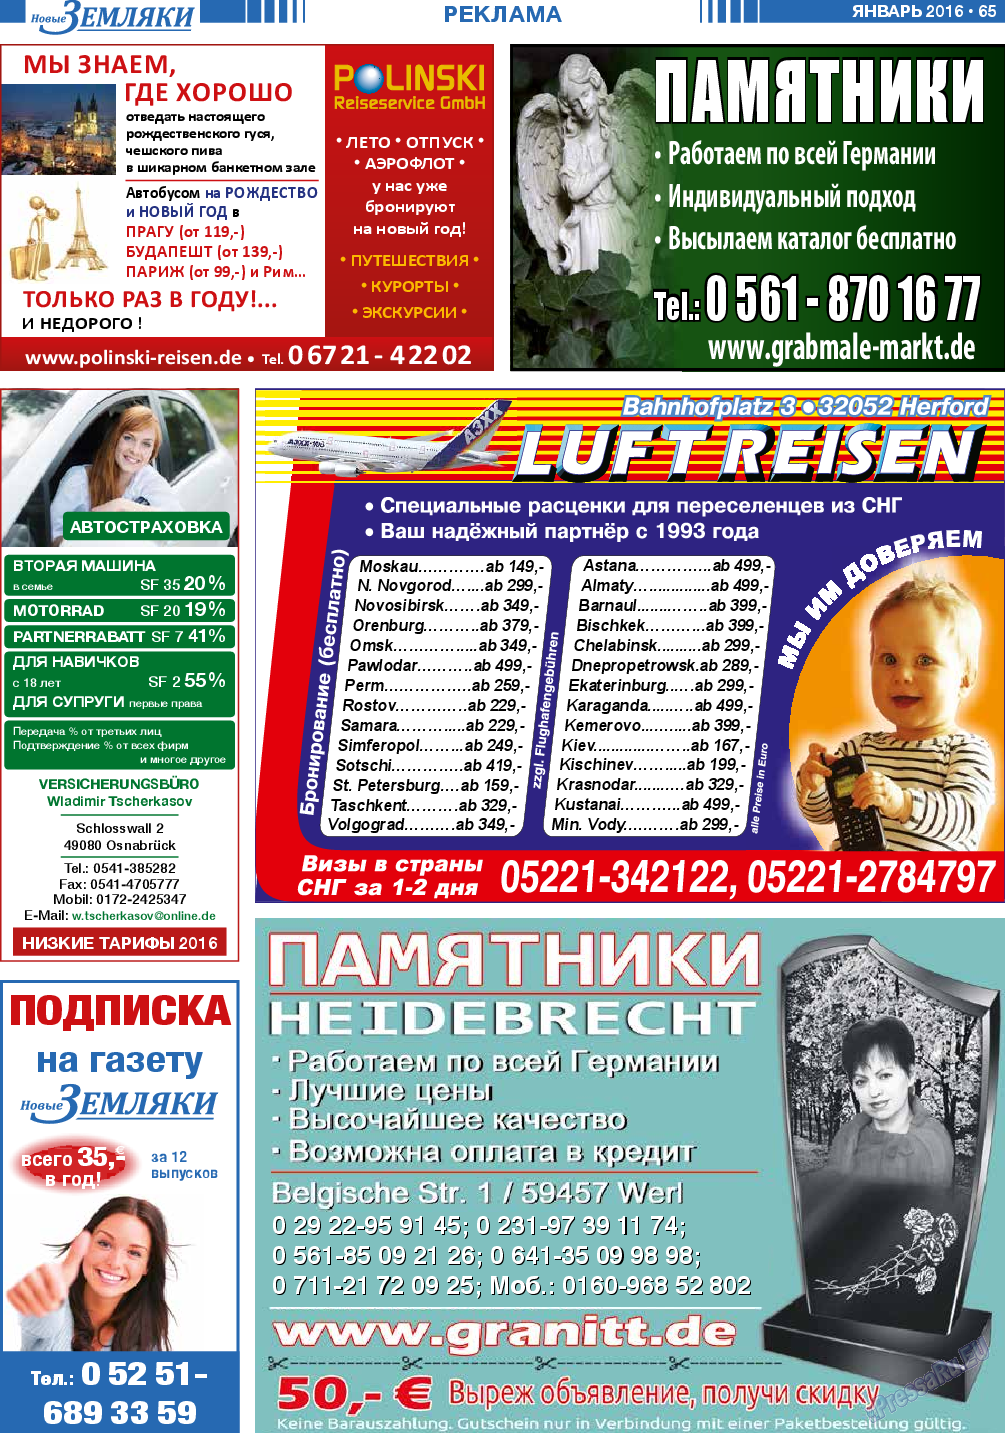 Новые Земляки (газета). 2016 год, номер 1, стр. 65